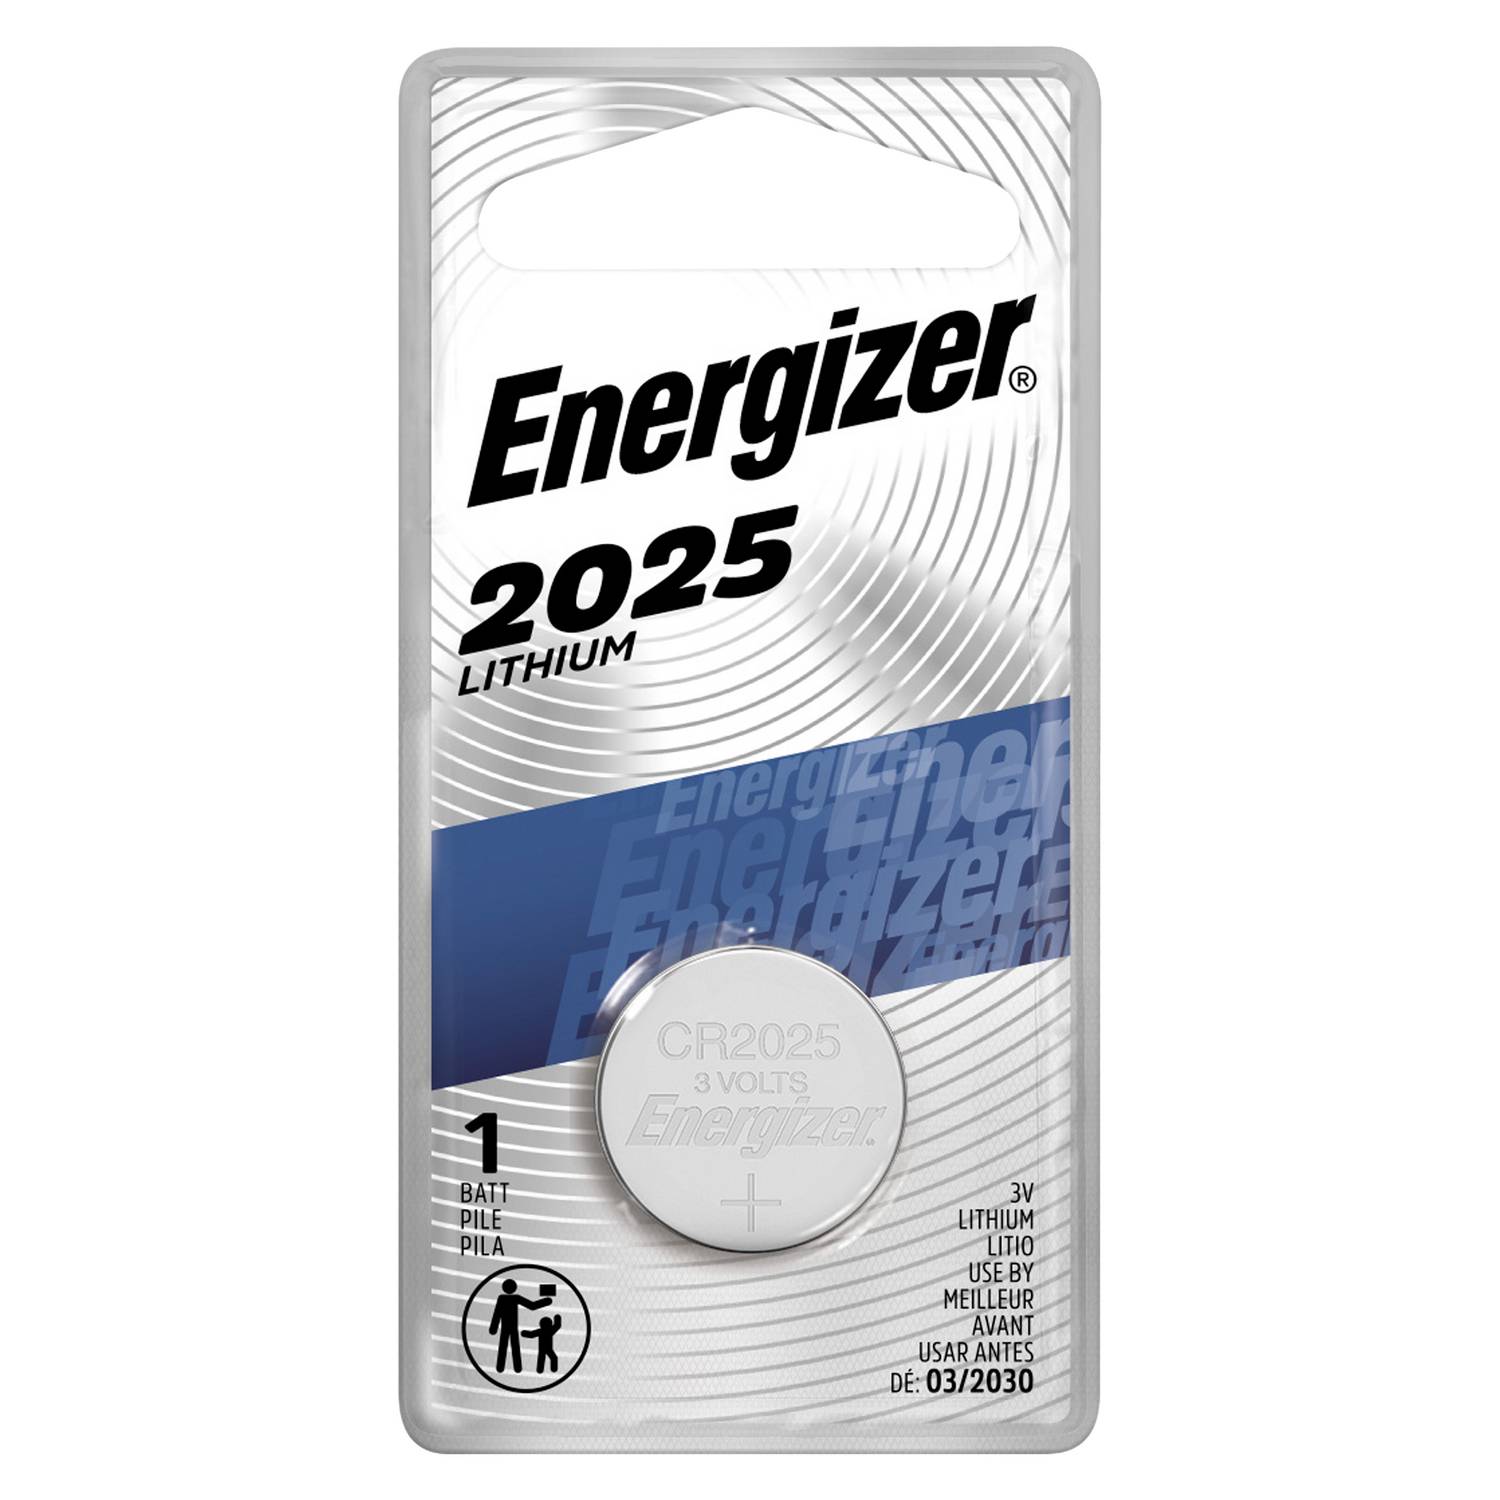 PILA BOTON ENERGIZER CR2025 LITIO 3V. 2025